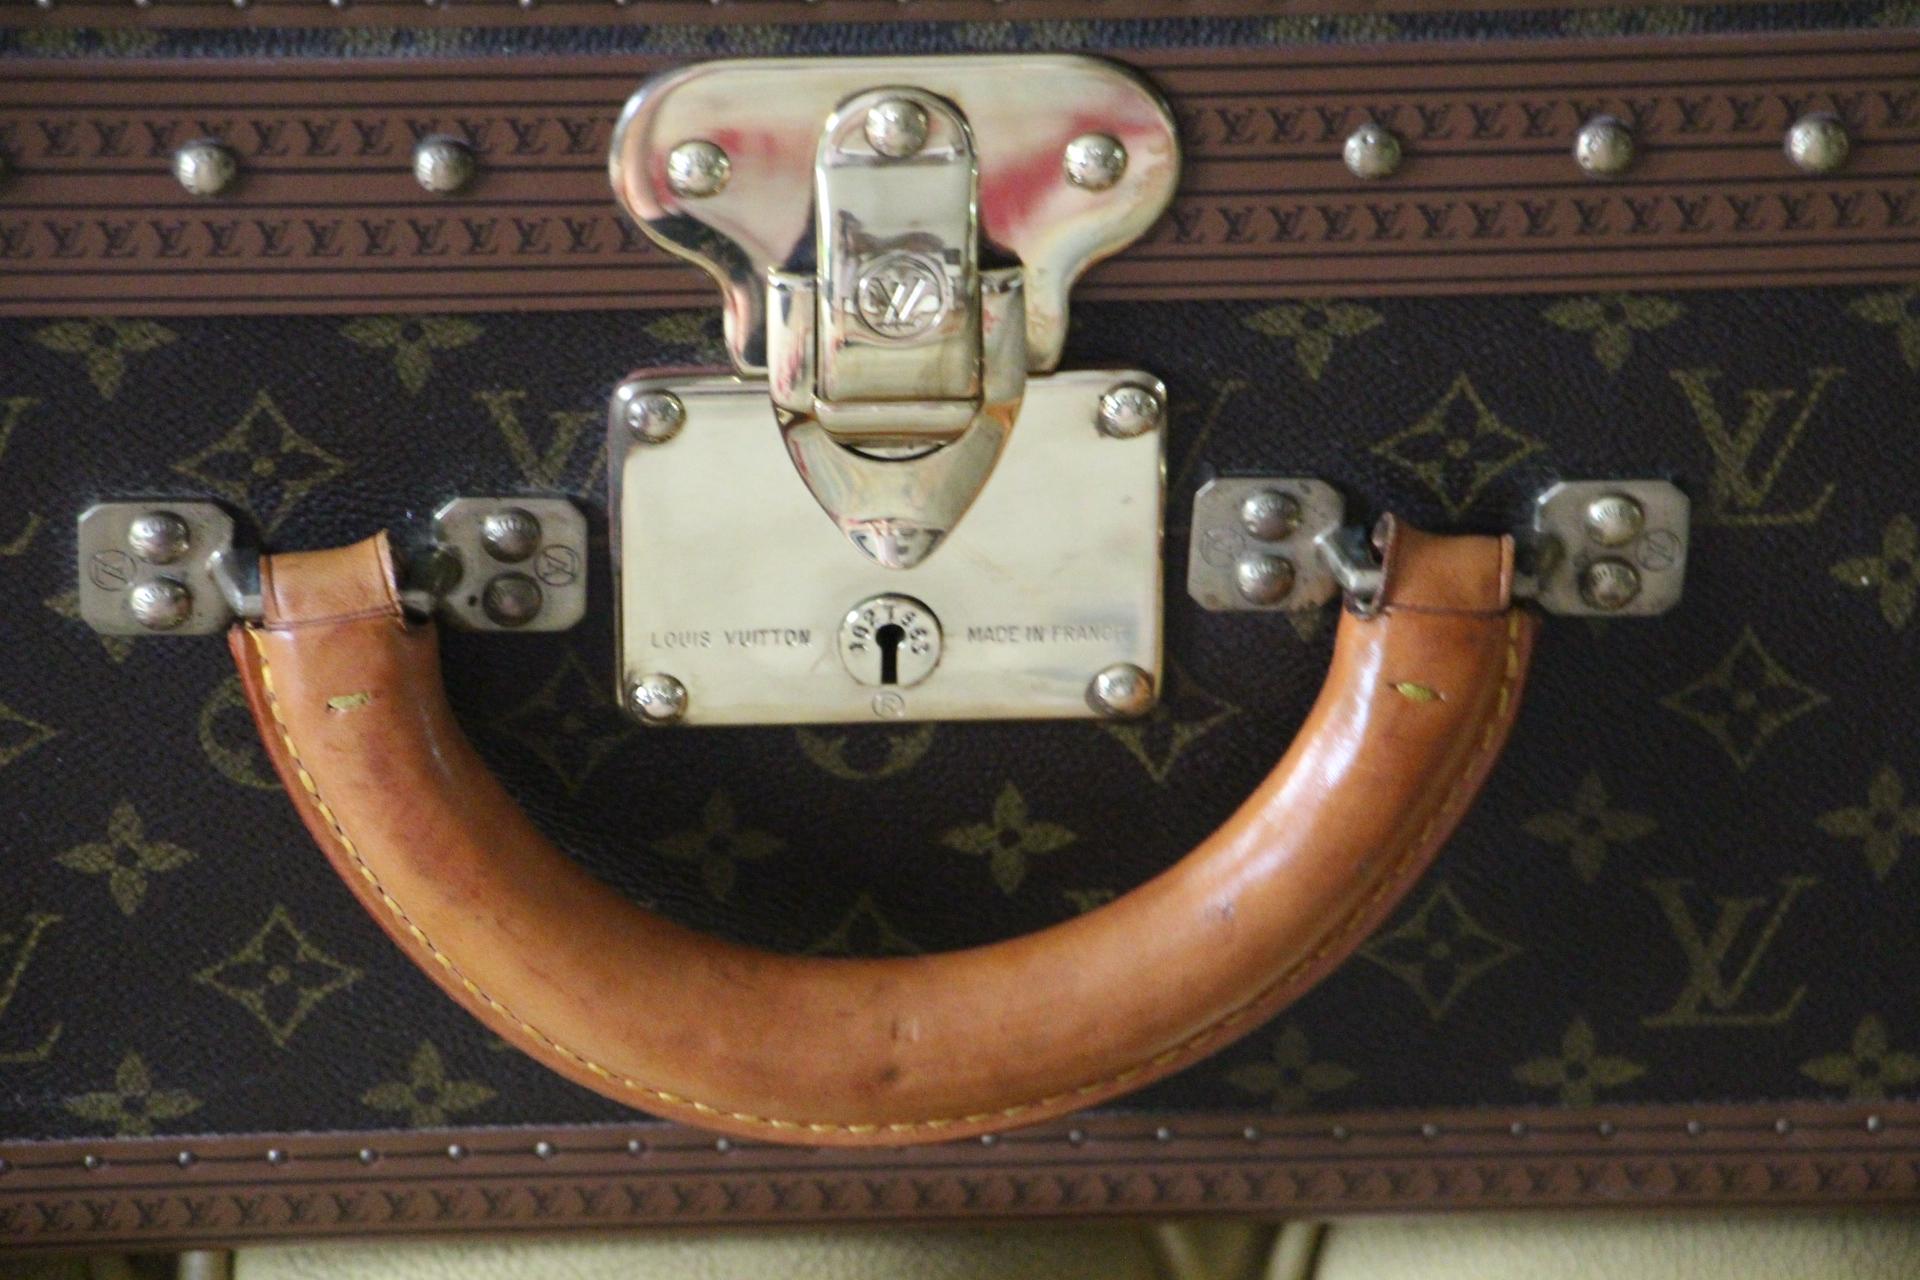 French Louis Vuitton Suitcase, Alzer 70 Louis Vuitton Suitcase, Vuitton Rigid Suitcase